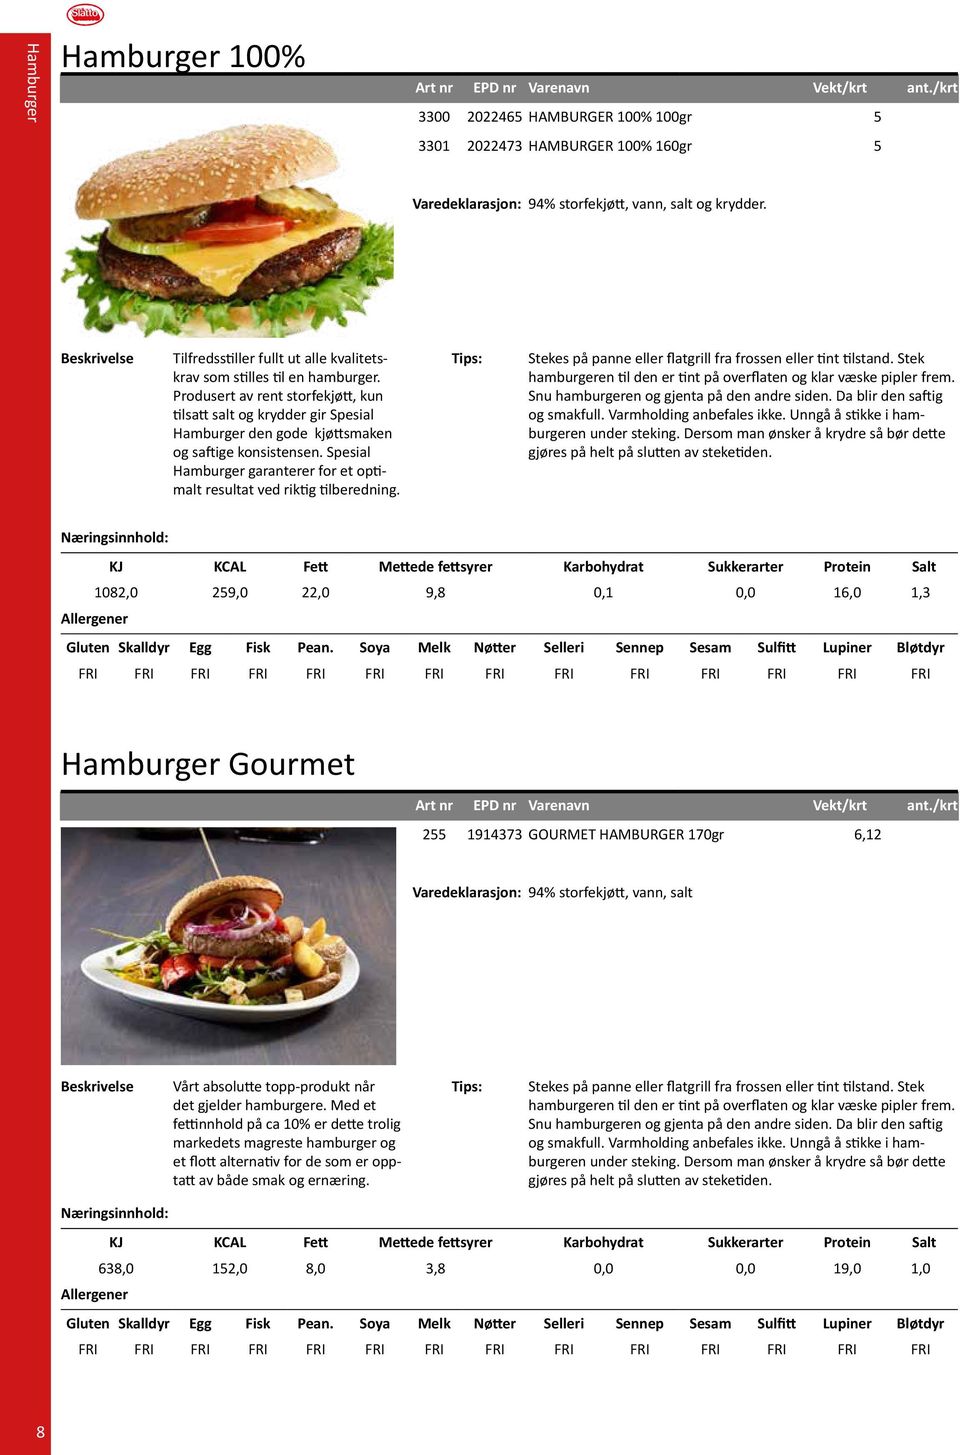 Spesial Hamburger garanterer for et optimalt resultat ved riktig tilberedning. Stekes på panne eller flatgrill fra frossen eller tint tilstand.